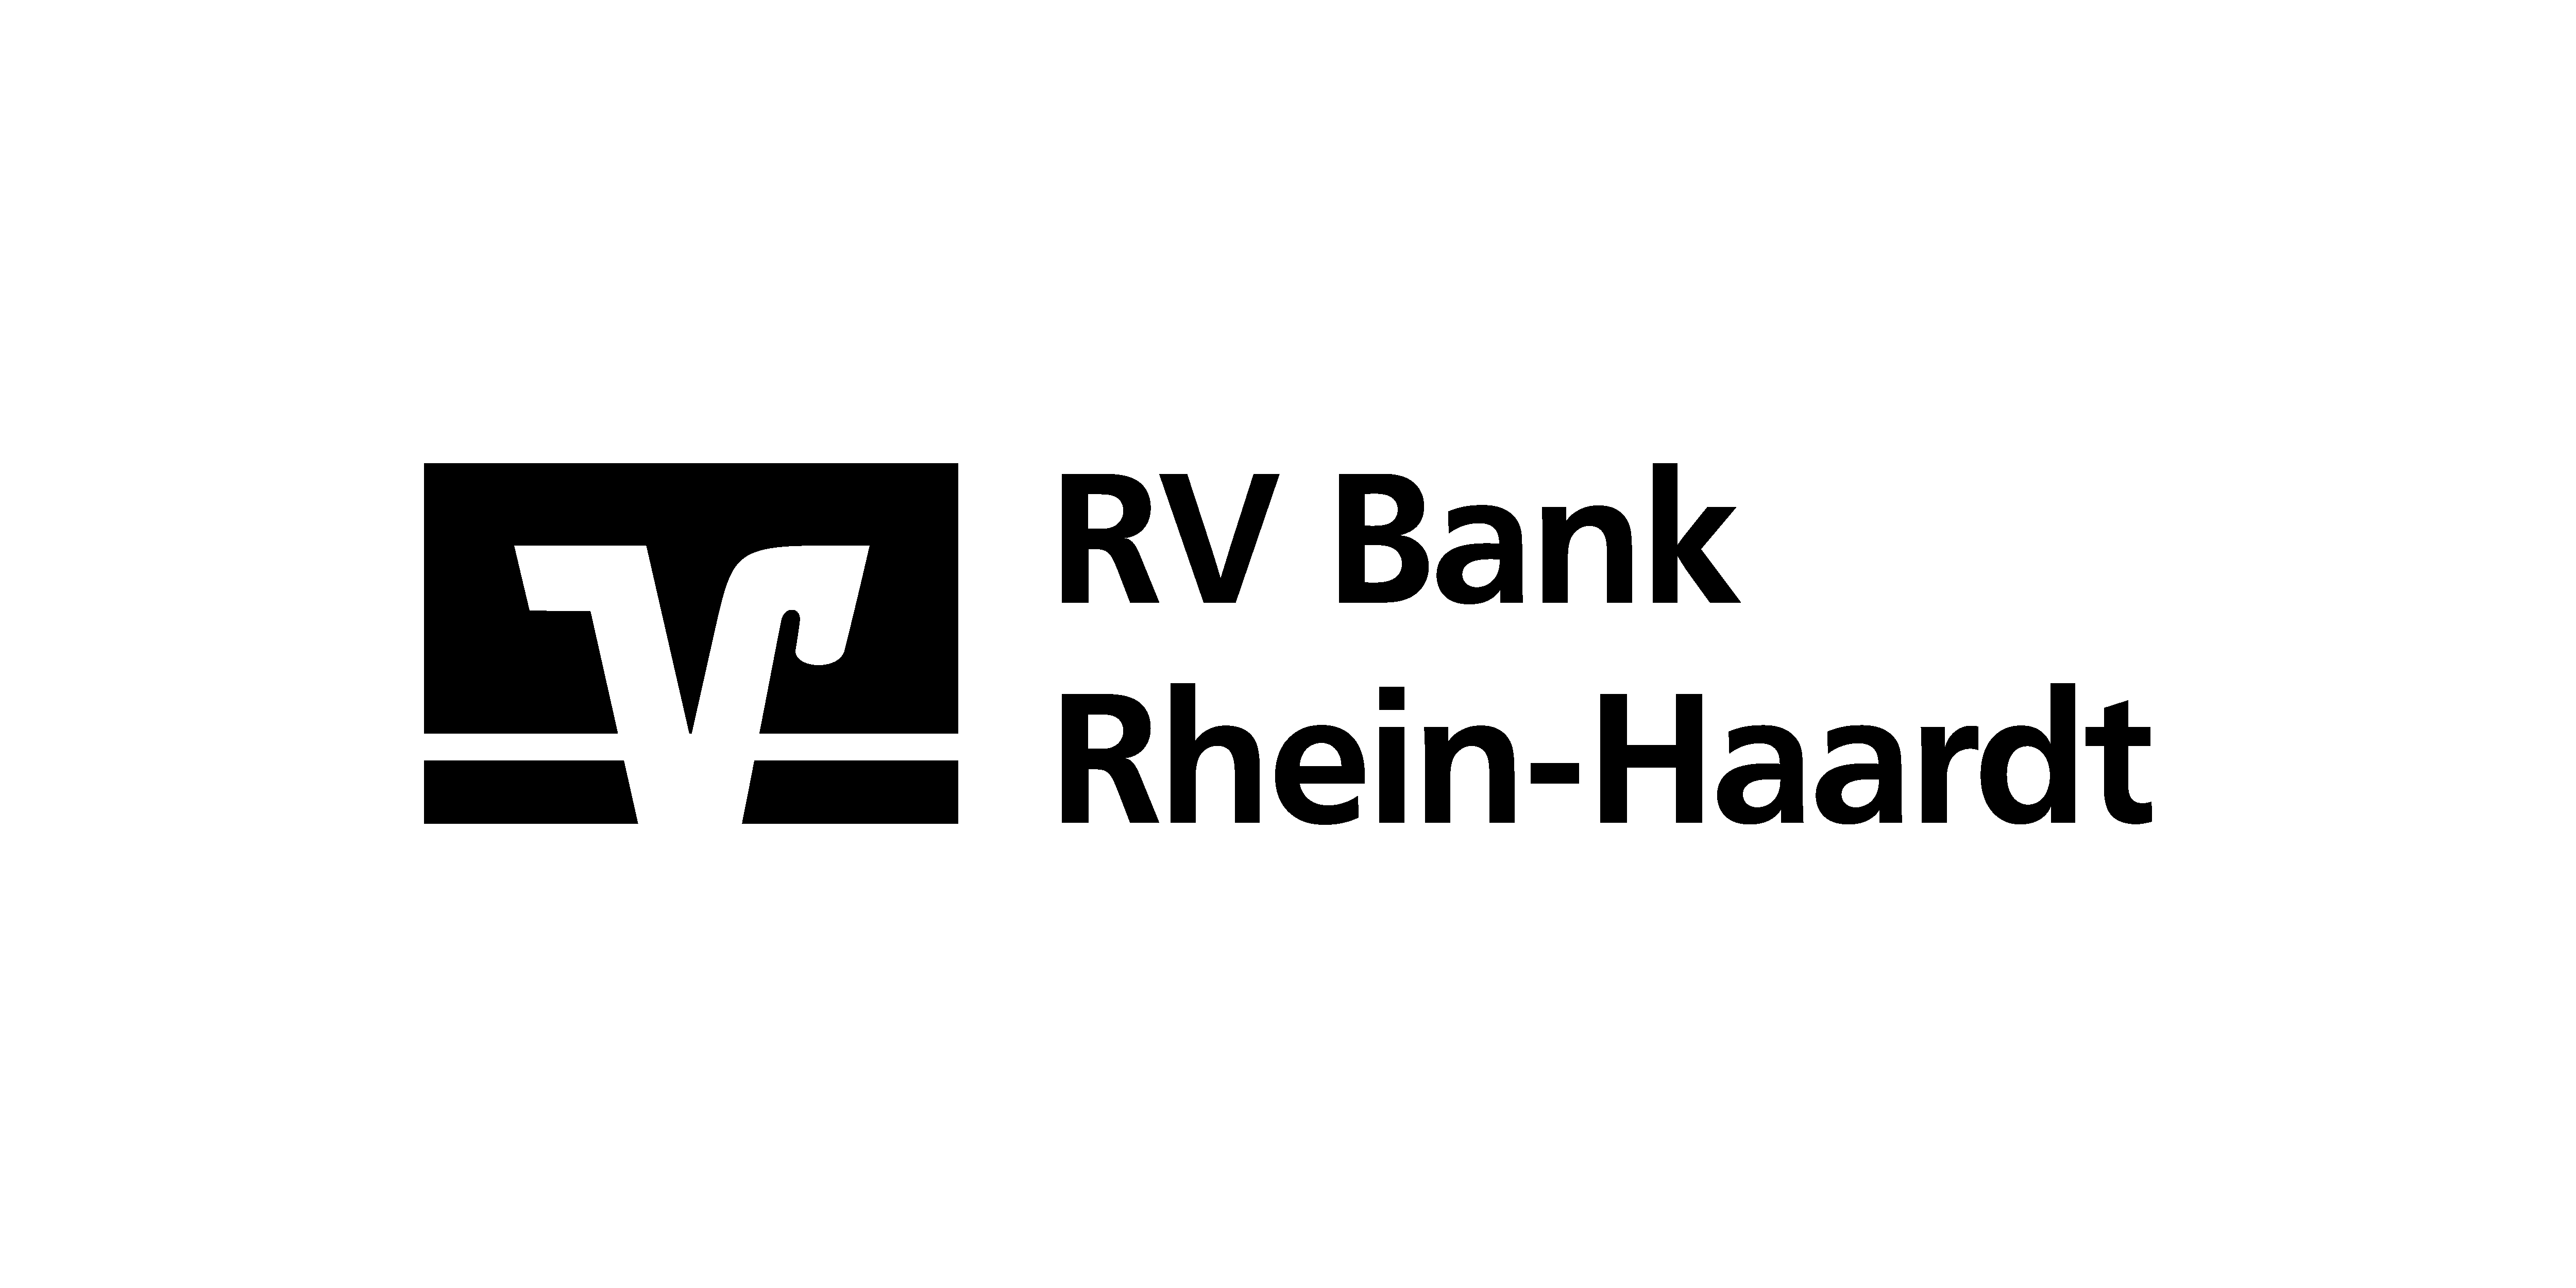 RV Bank Rhein-Haardt